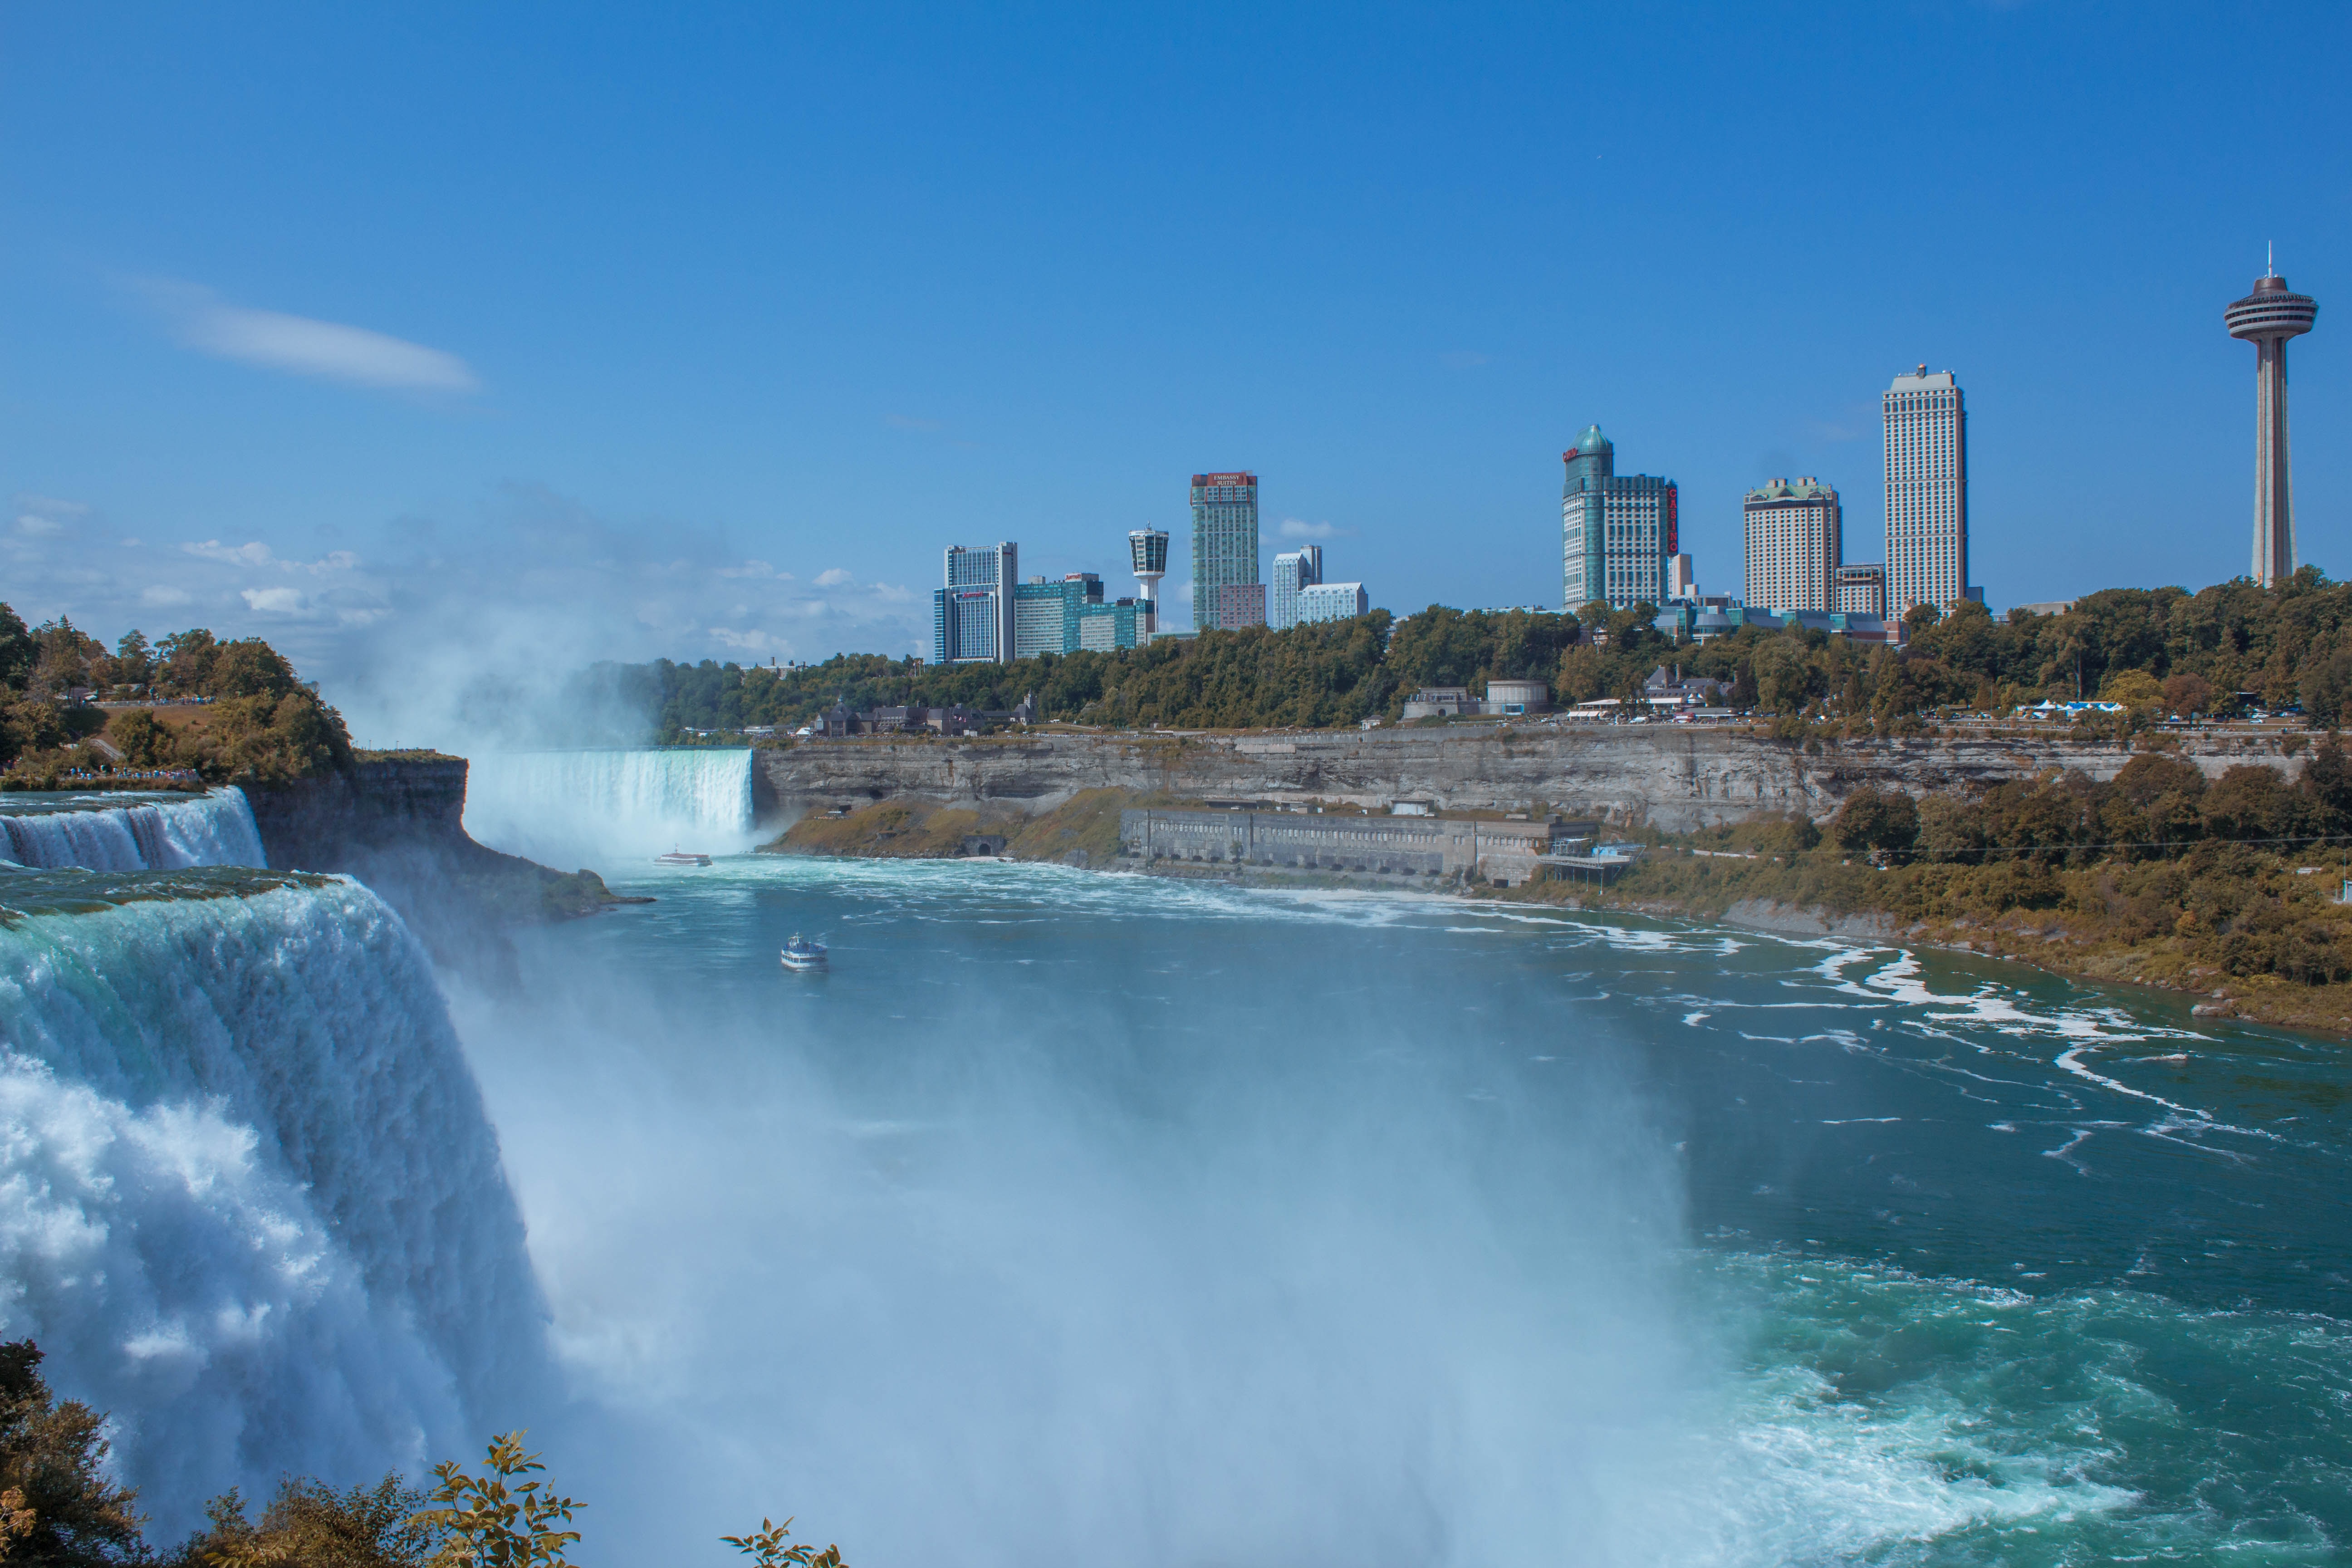 So, why visit Niagara Falls?